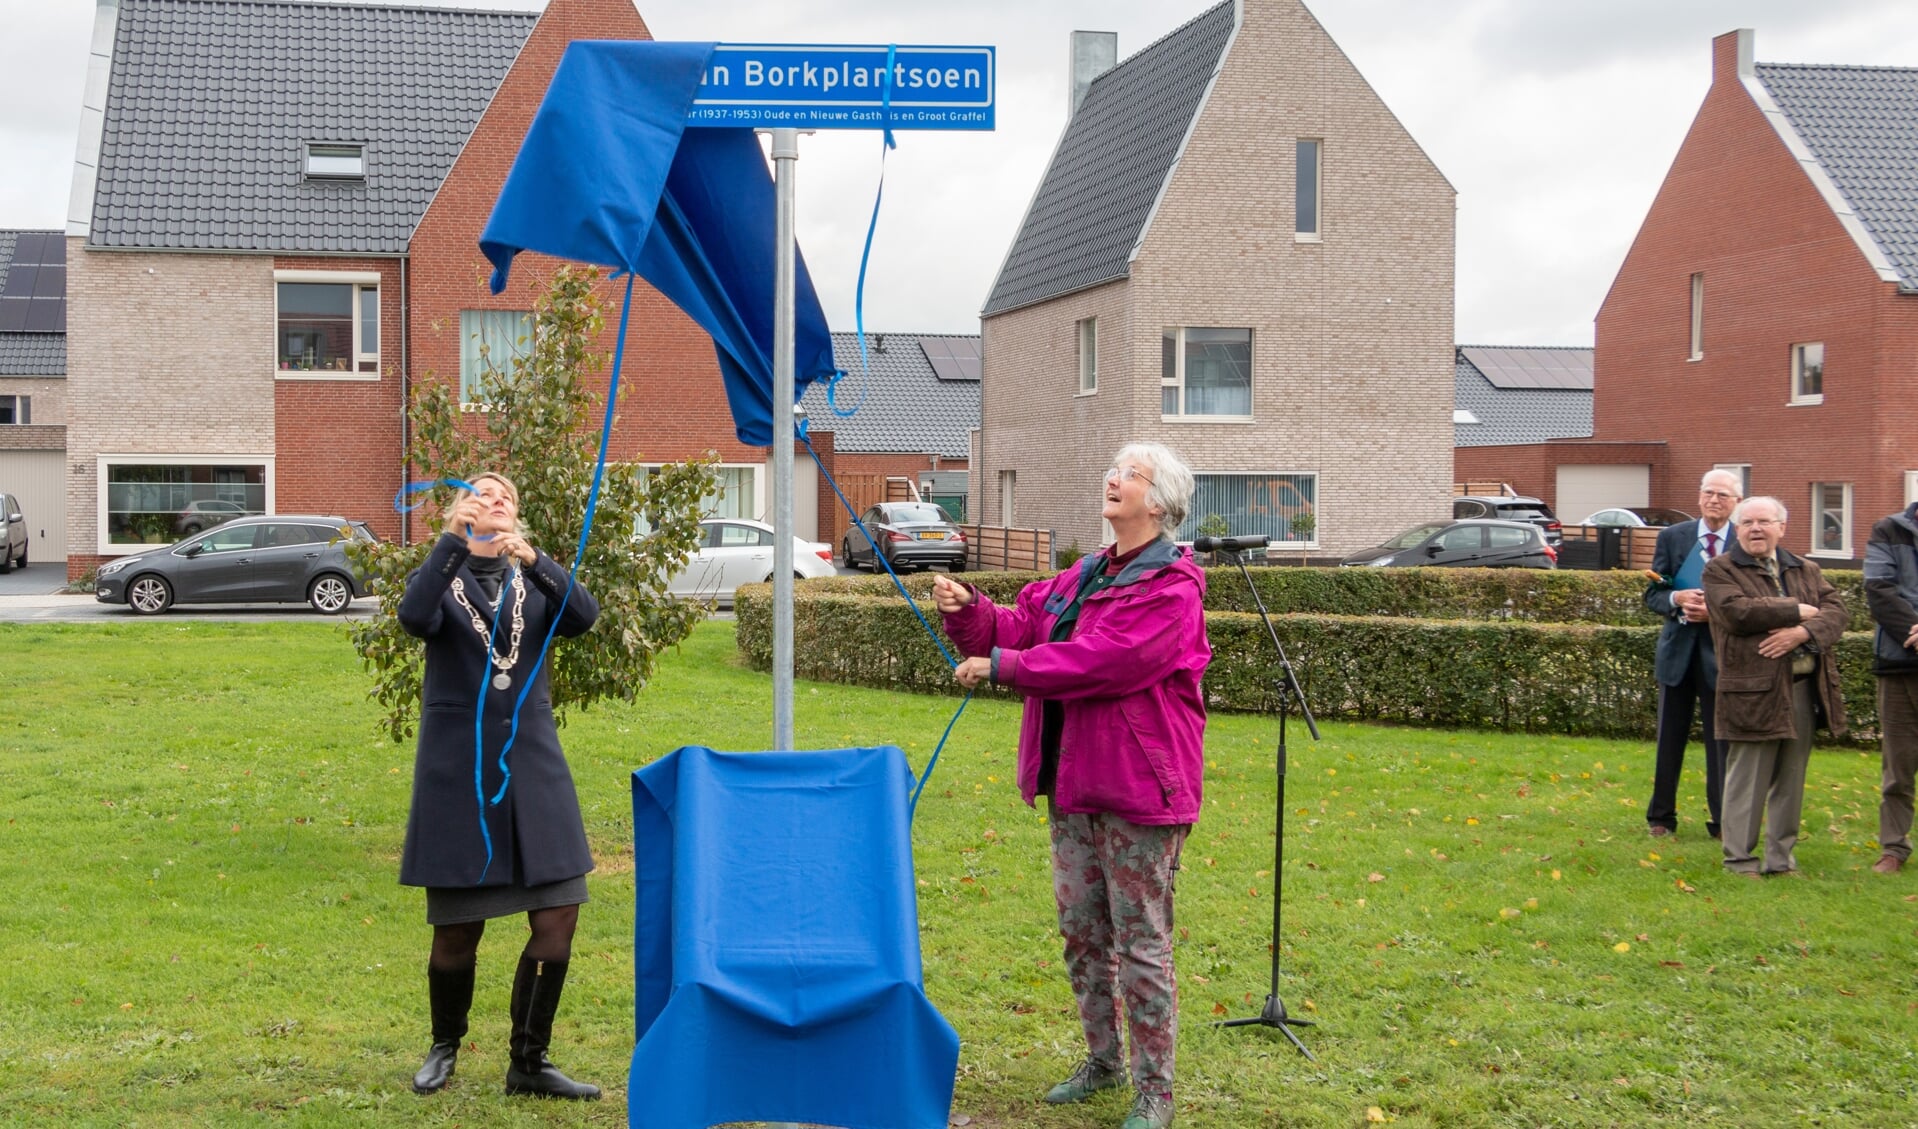 Locoburgemeester Laura Werger en kleindochter Marianne van Bork onthullen de straatnaam. Foto: Henk Derksen